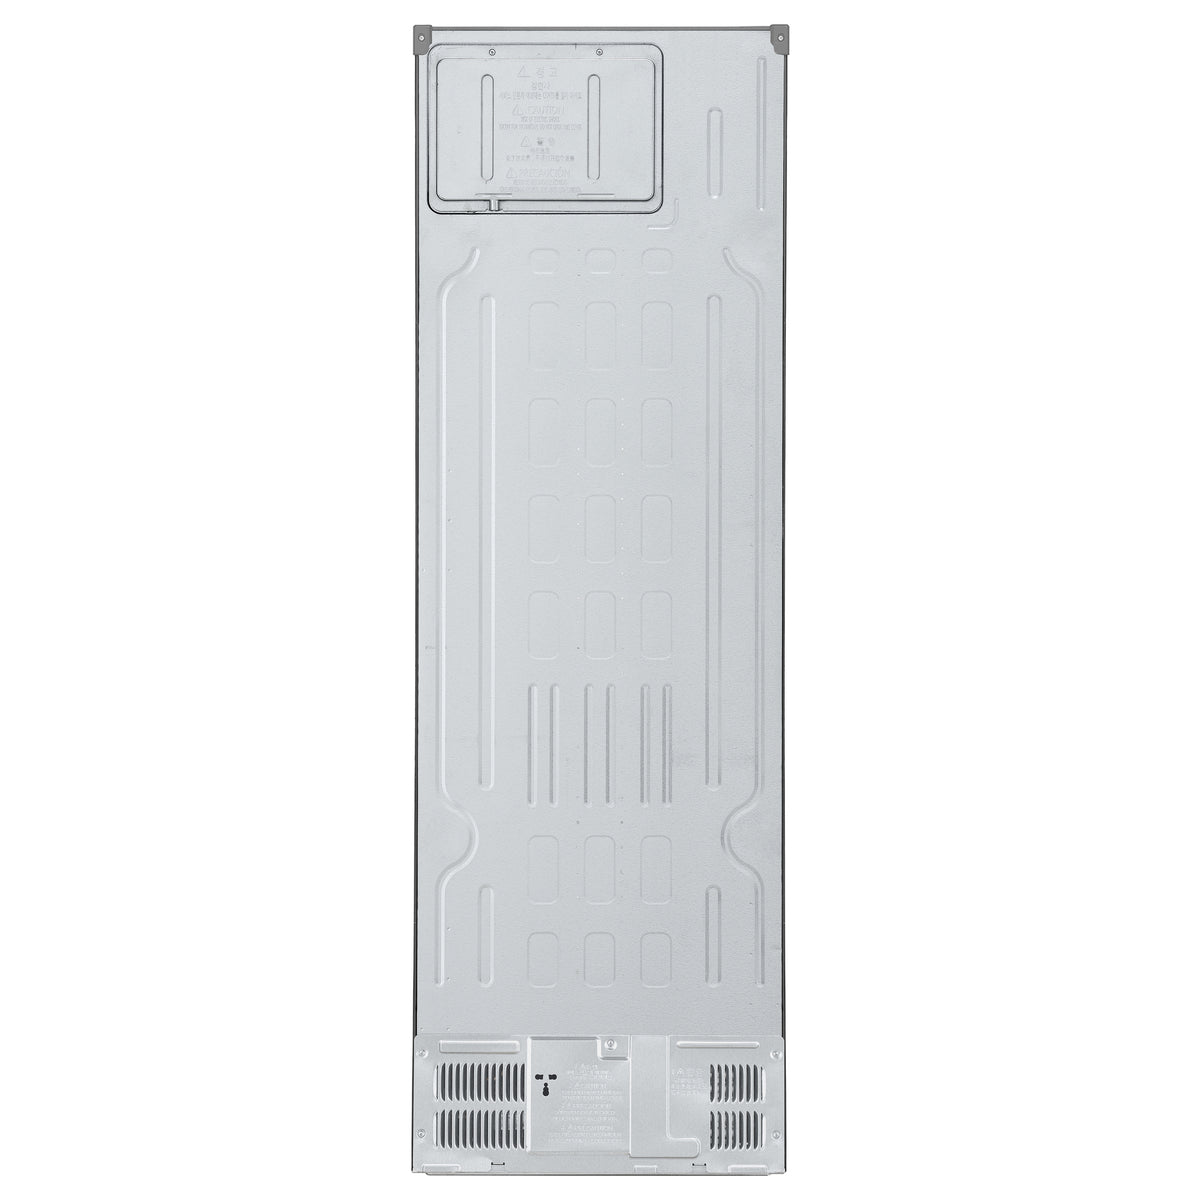 Kombinovaná lednice s mrazákem dole LG GBV3100CPY